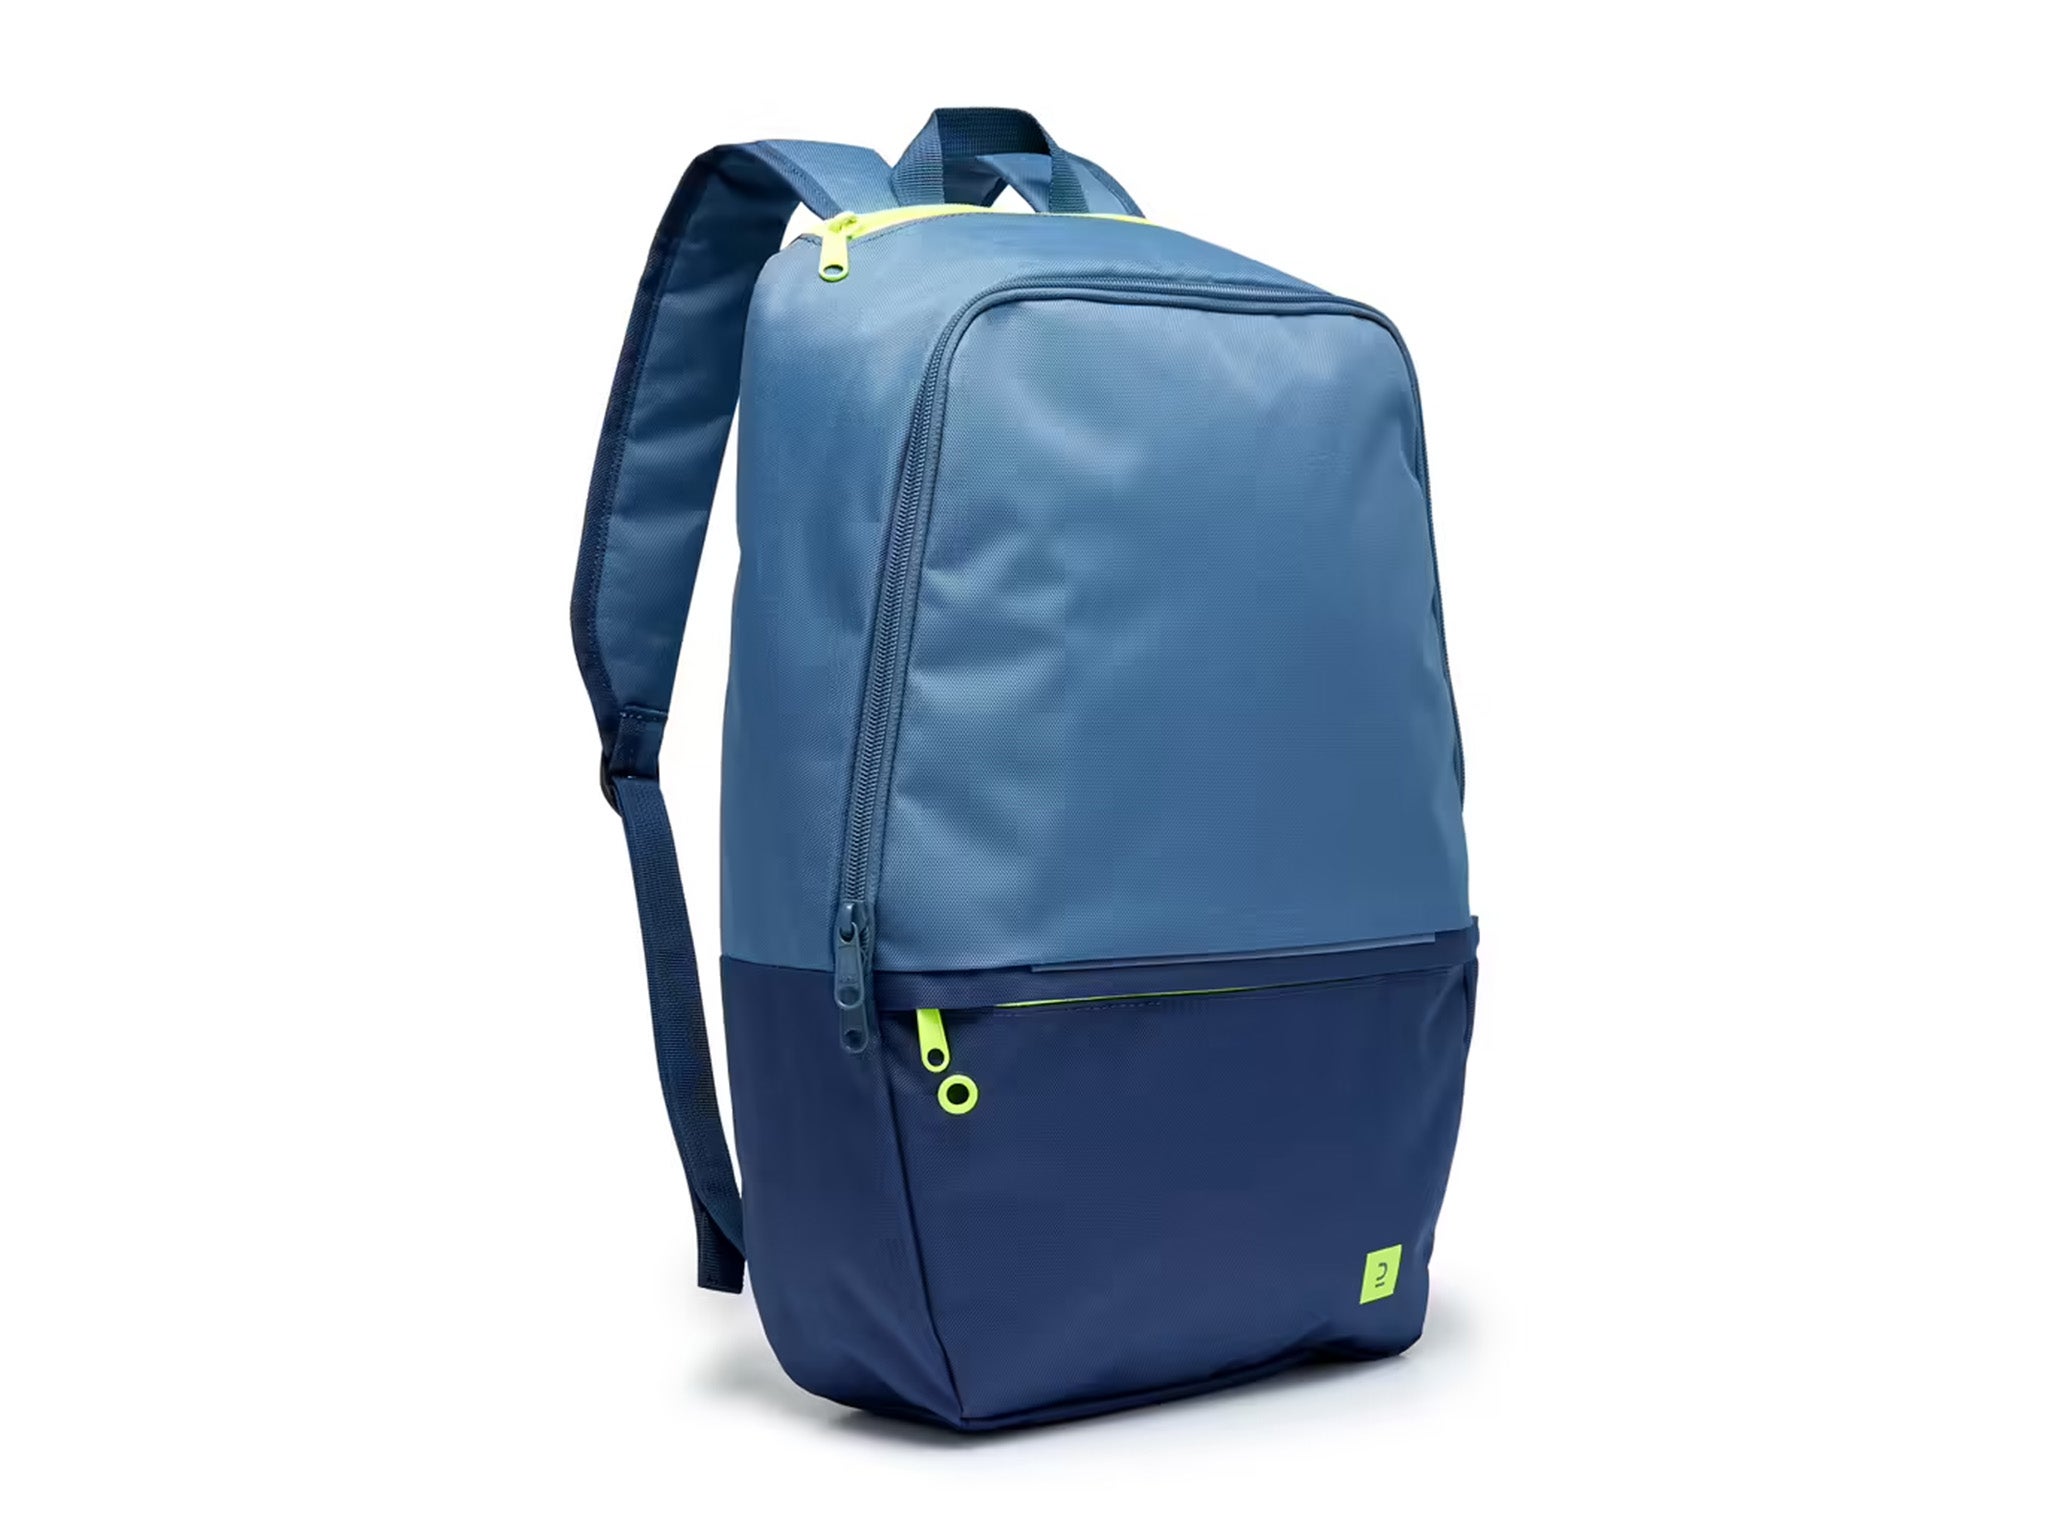 Kipsta essential kids’ backpack